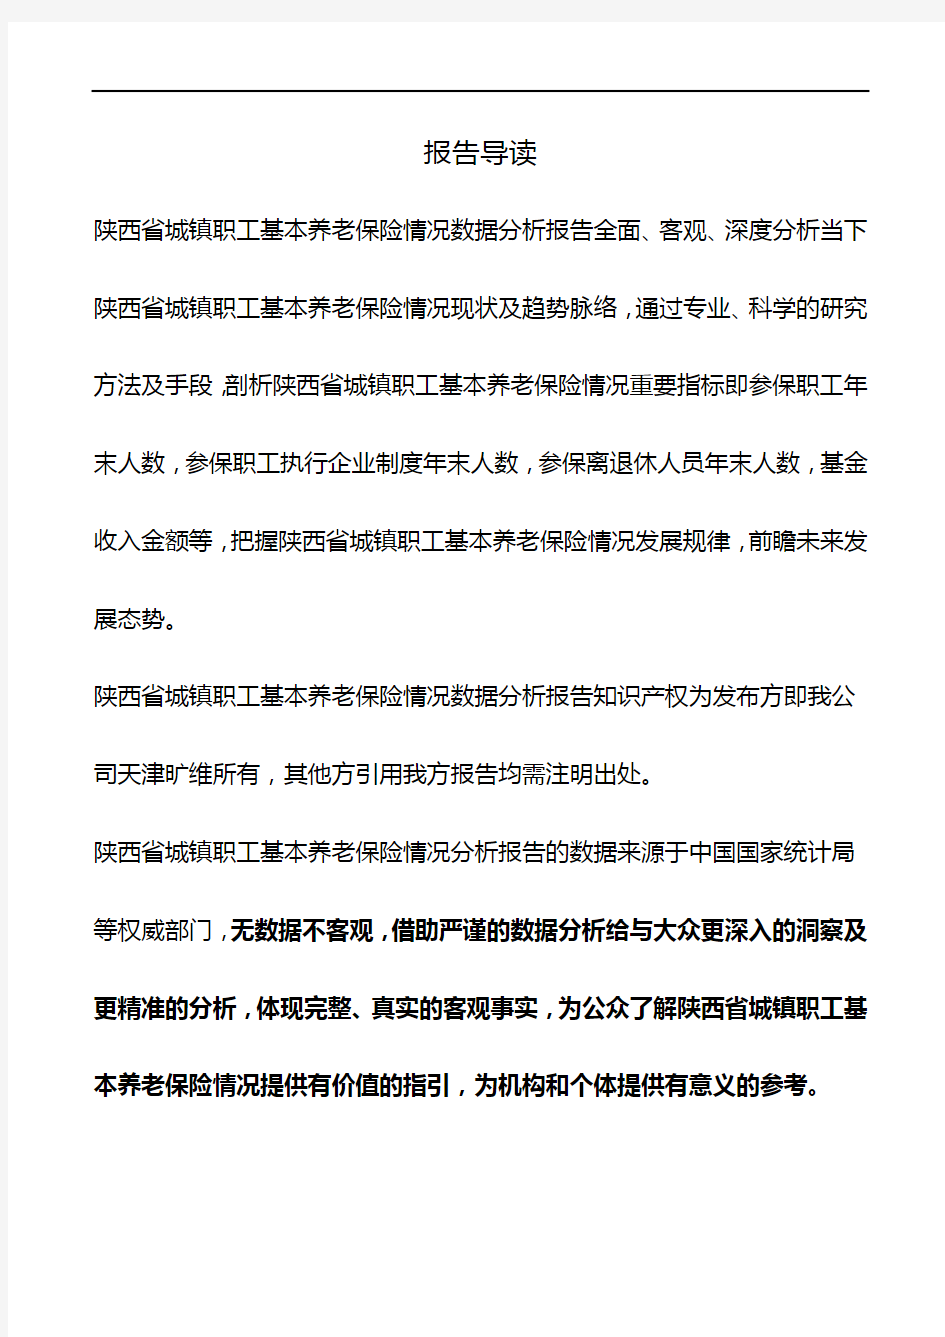 陕西省城镇职工基本养老保险情况数据分析报告2018版